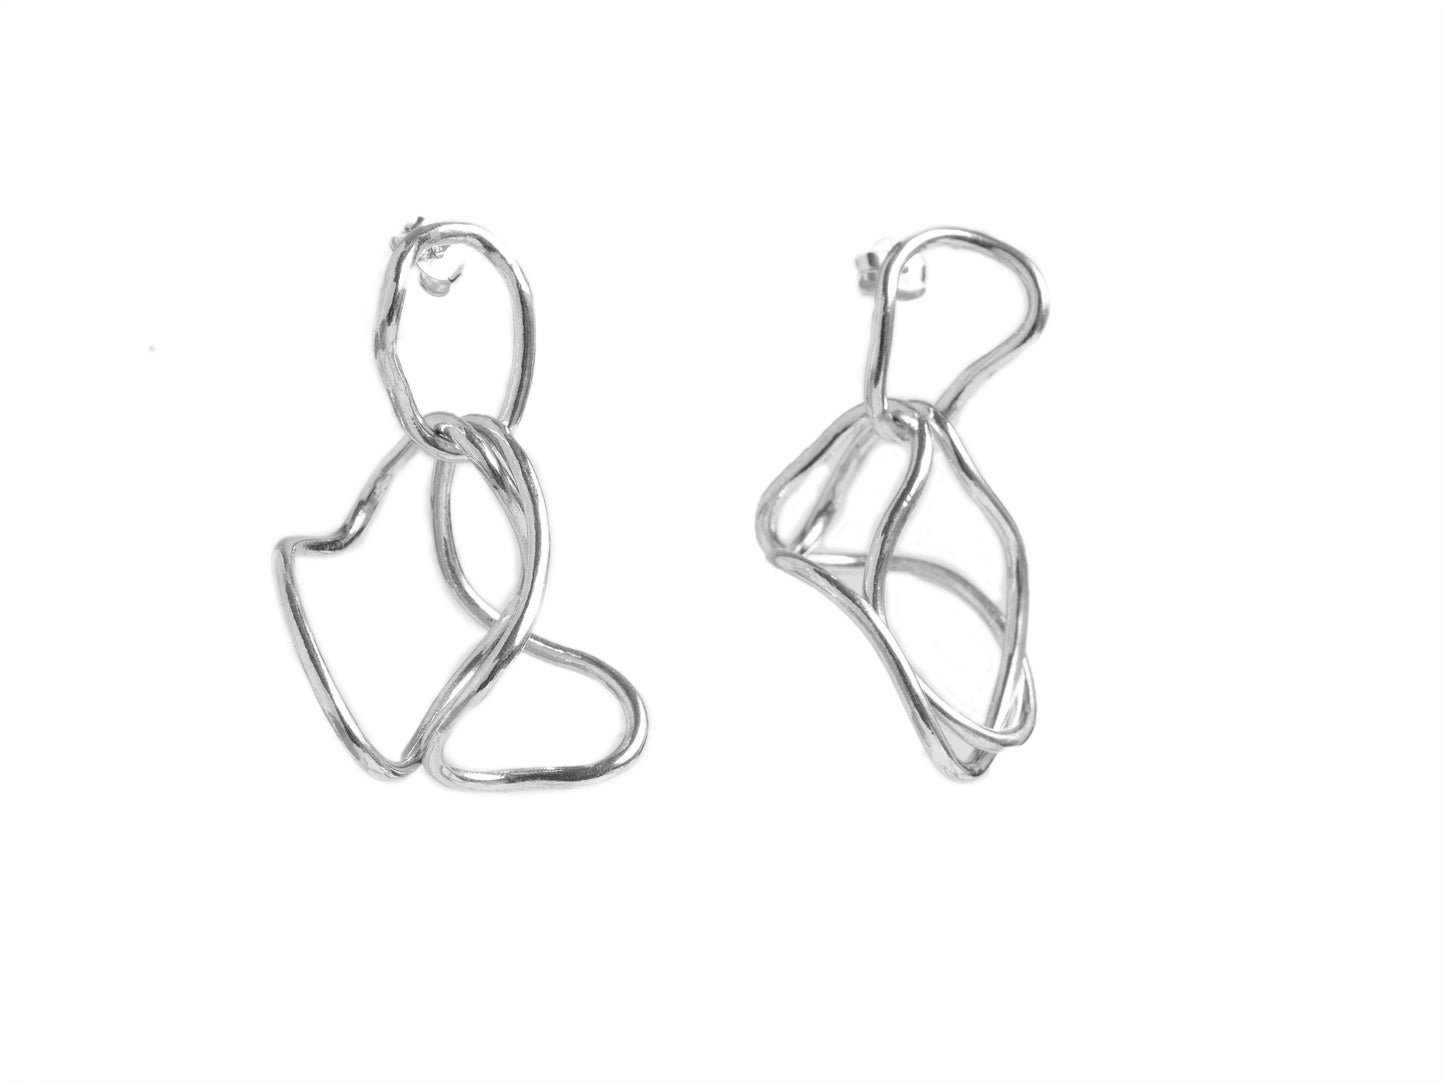 Sculptural link earrings